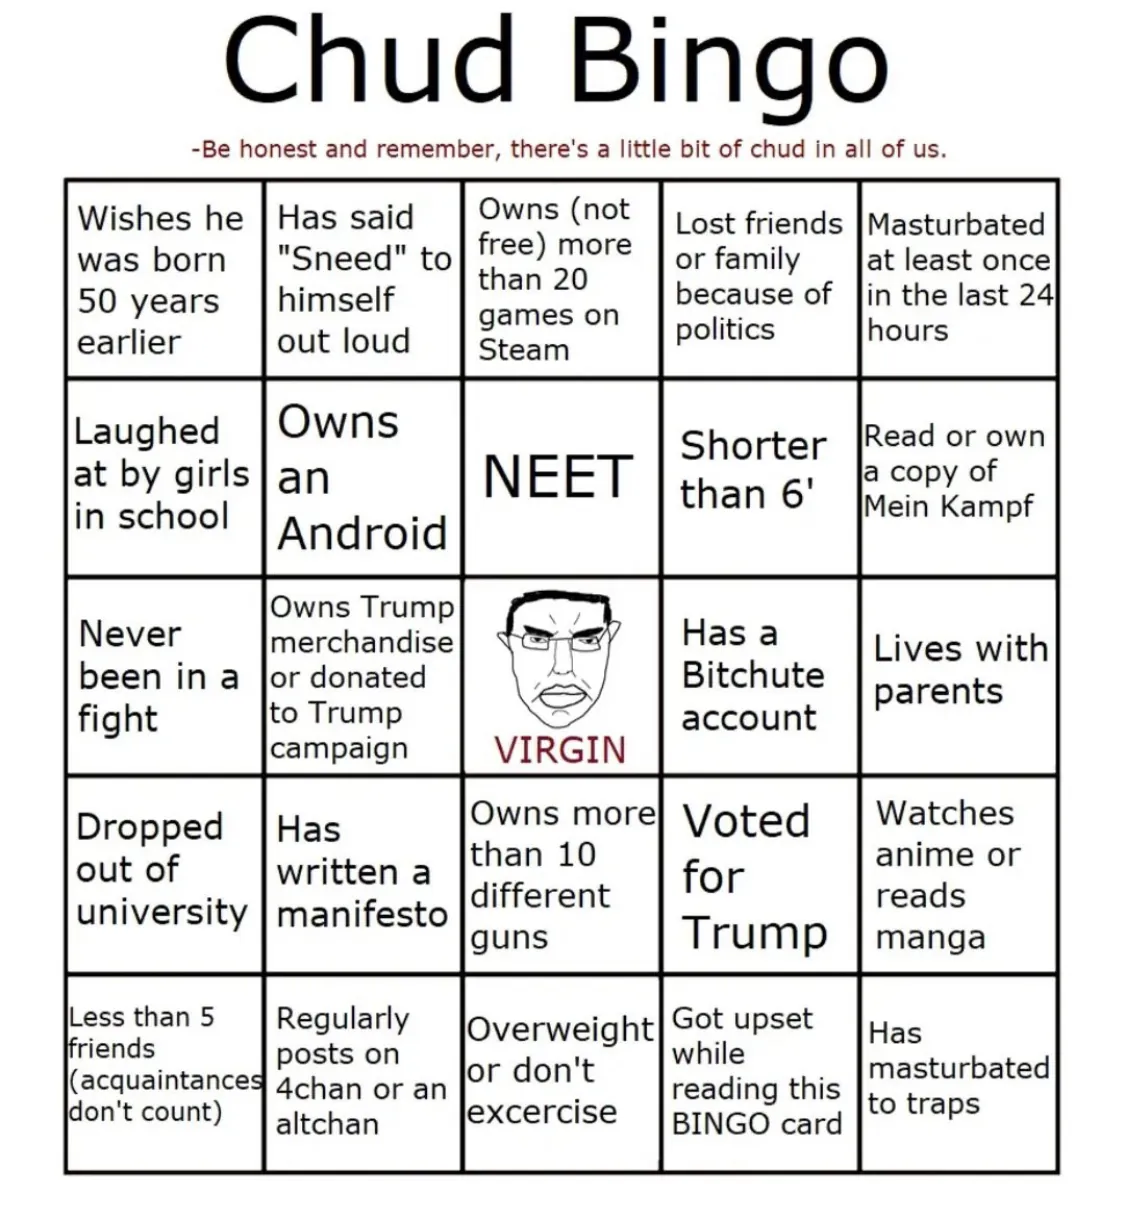 Chud bingo